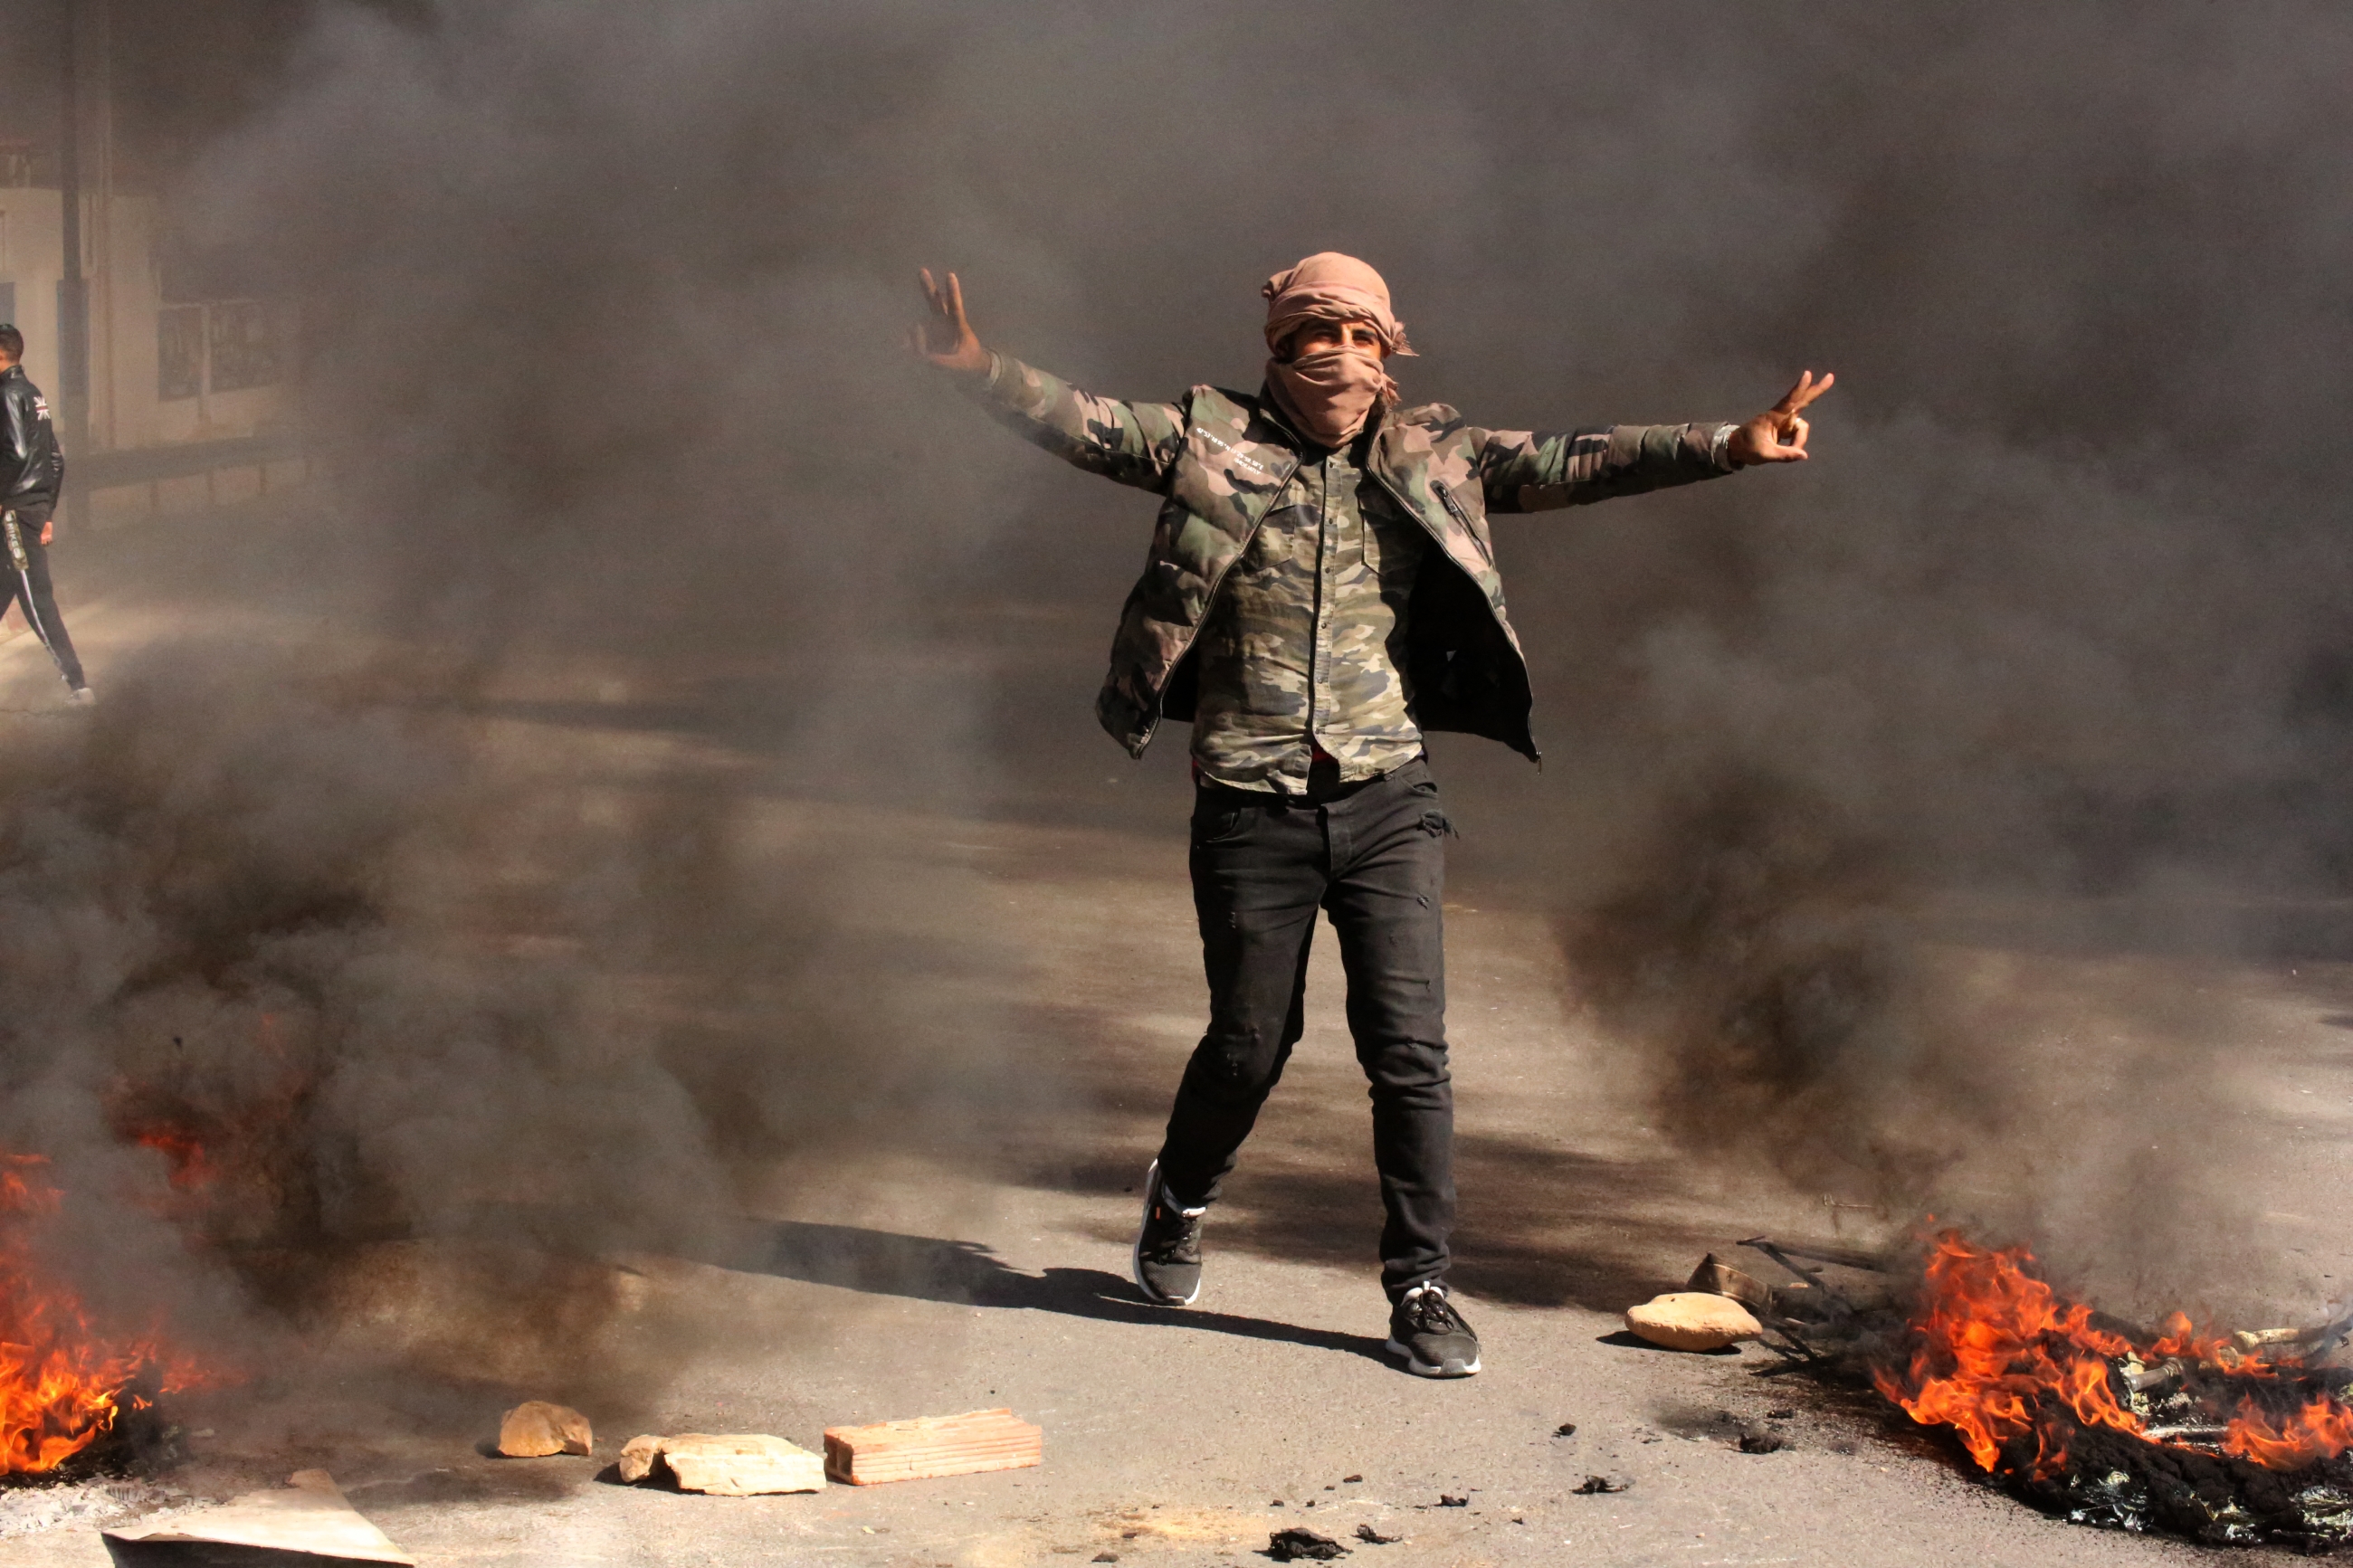 Un Tunisien fait le V comme signe de victoire alors que des jeunes brûlent des pneus et bloquent des routes dans la ville de Tataouine, au sud du pays, le 12 février 2021 (AFP)